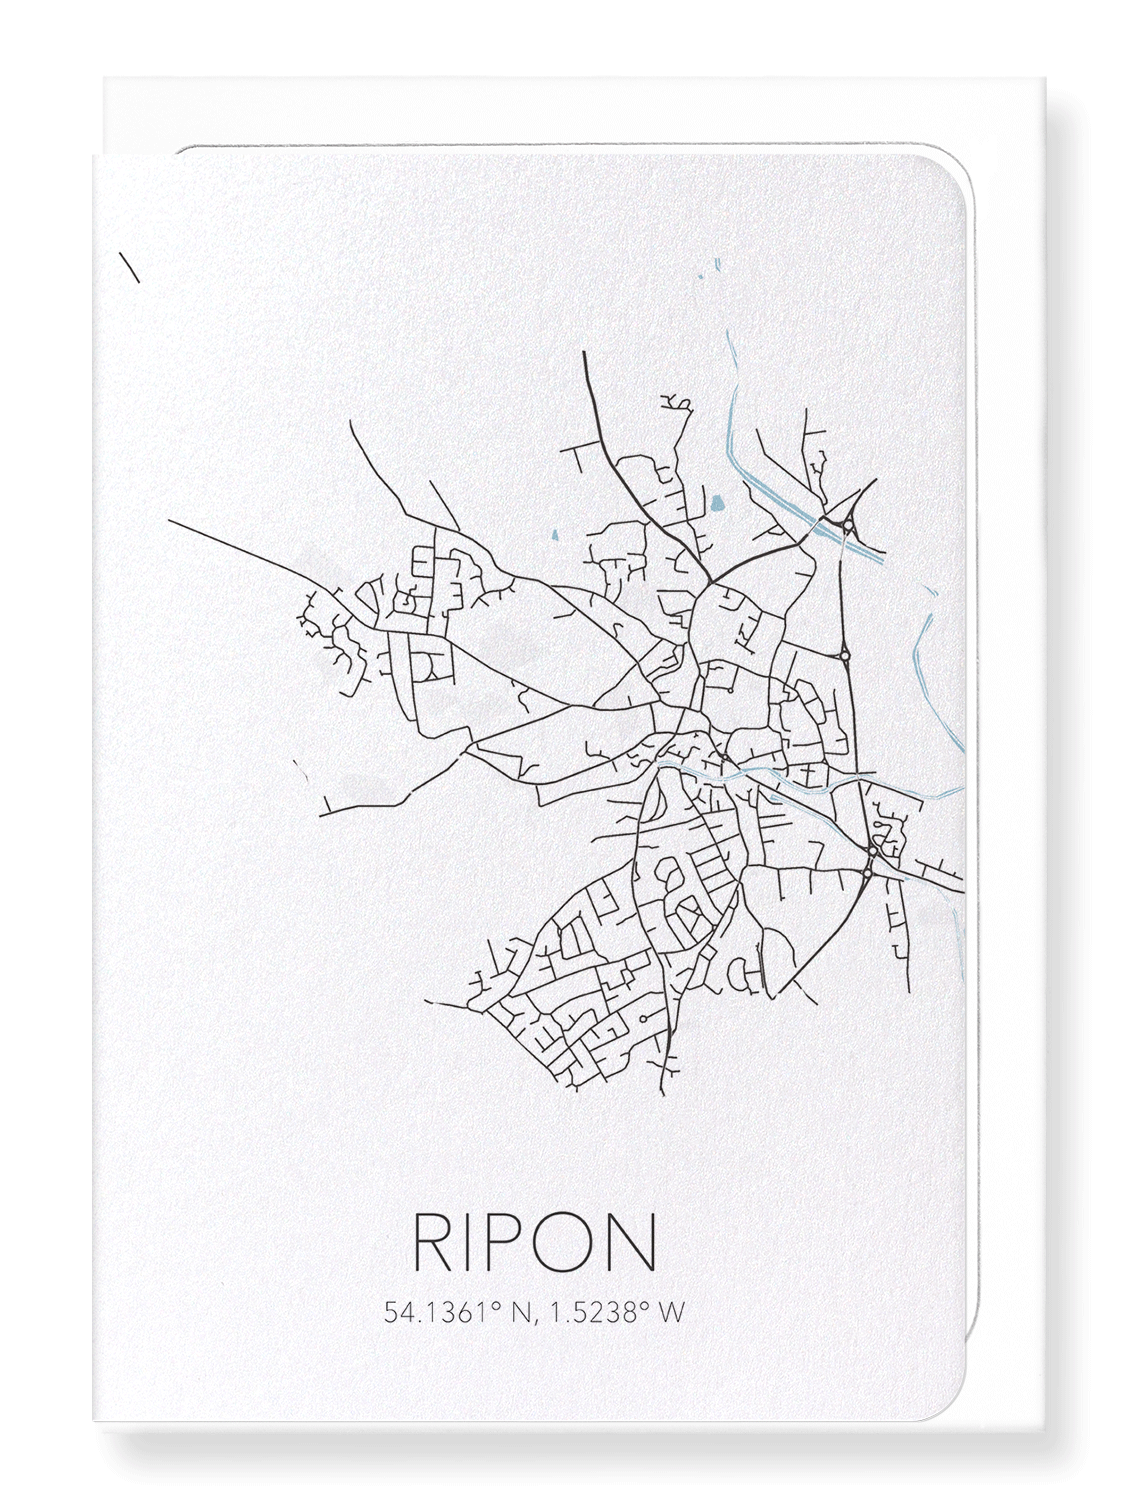 RIPON CUTOUT: Map Cutout Greeting Card